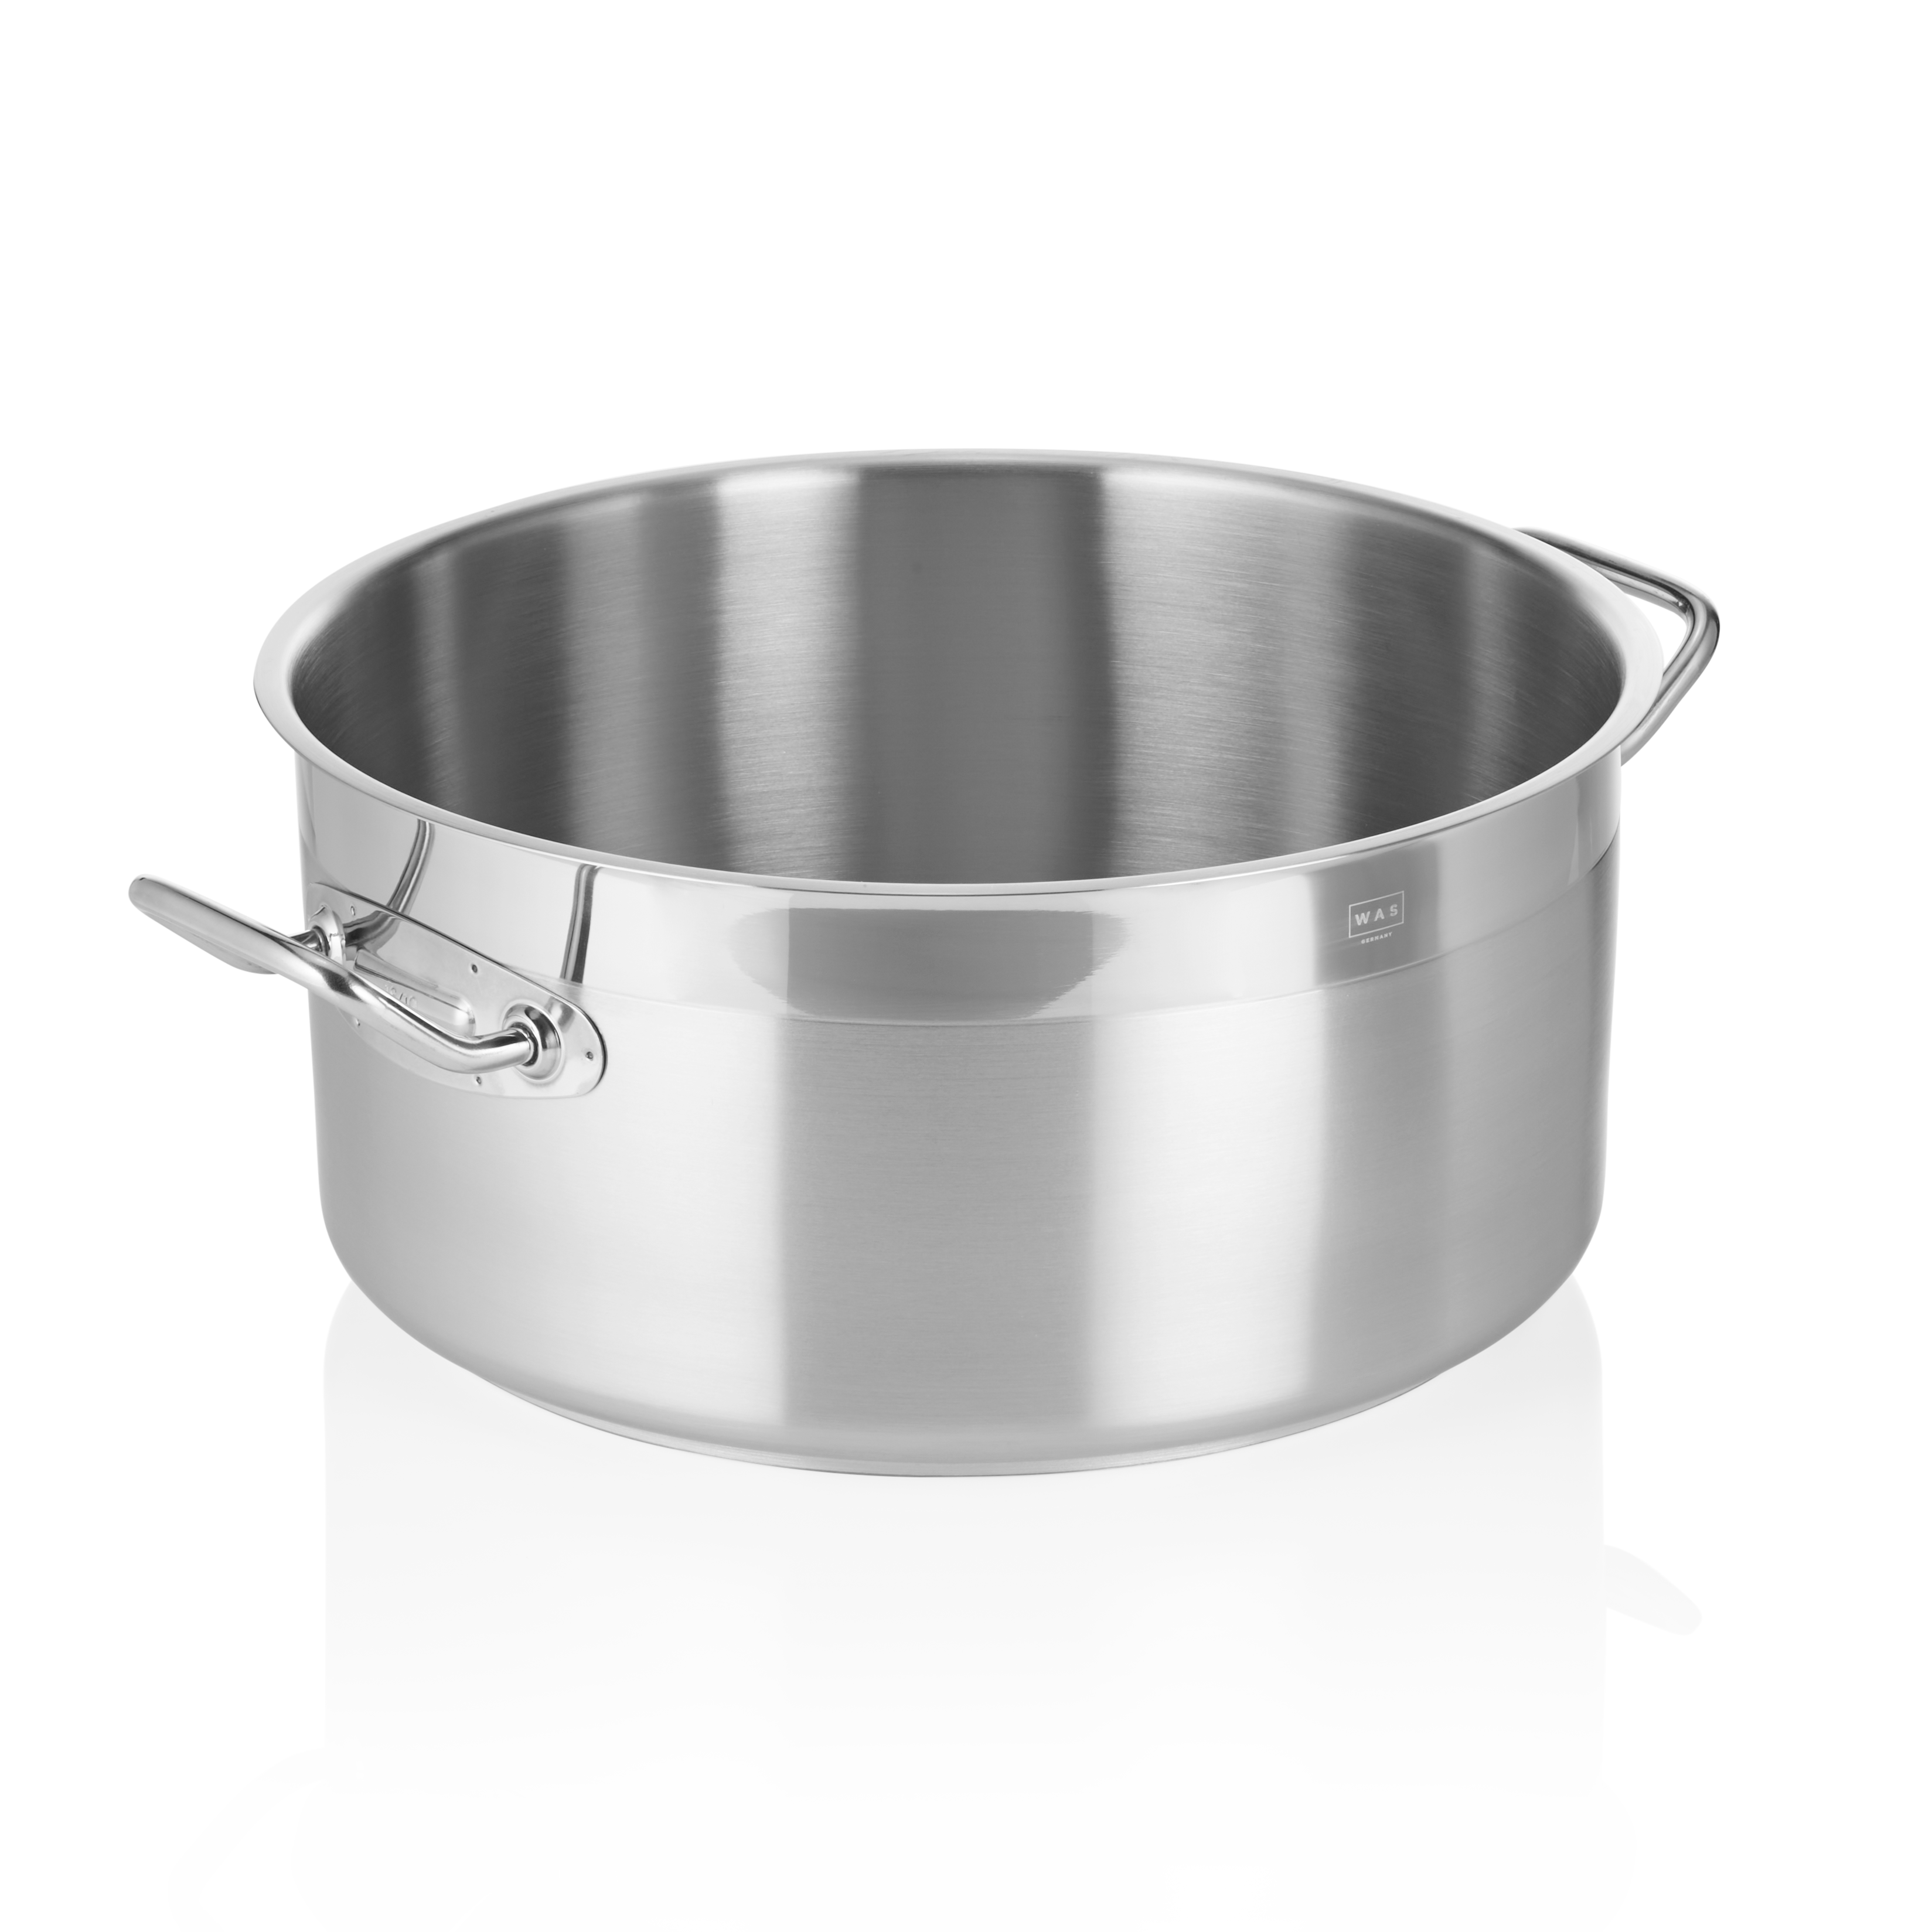 Bratentopf Cookware 21, Ø 36 cm, 17,0 Liter - Höhe 18,0 cm - Edelstahl 18/10